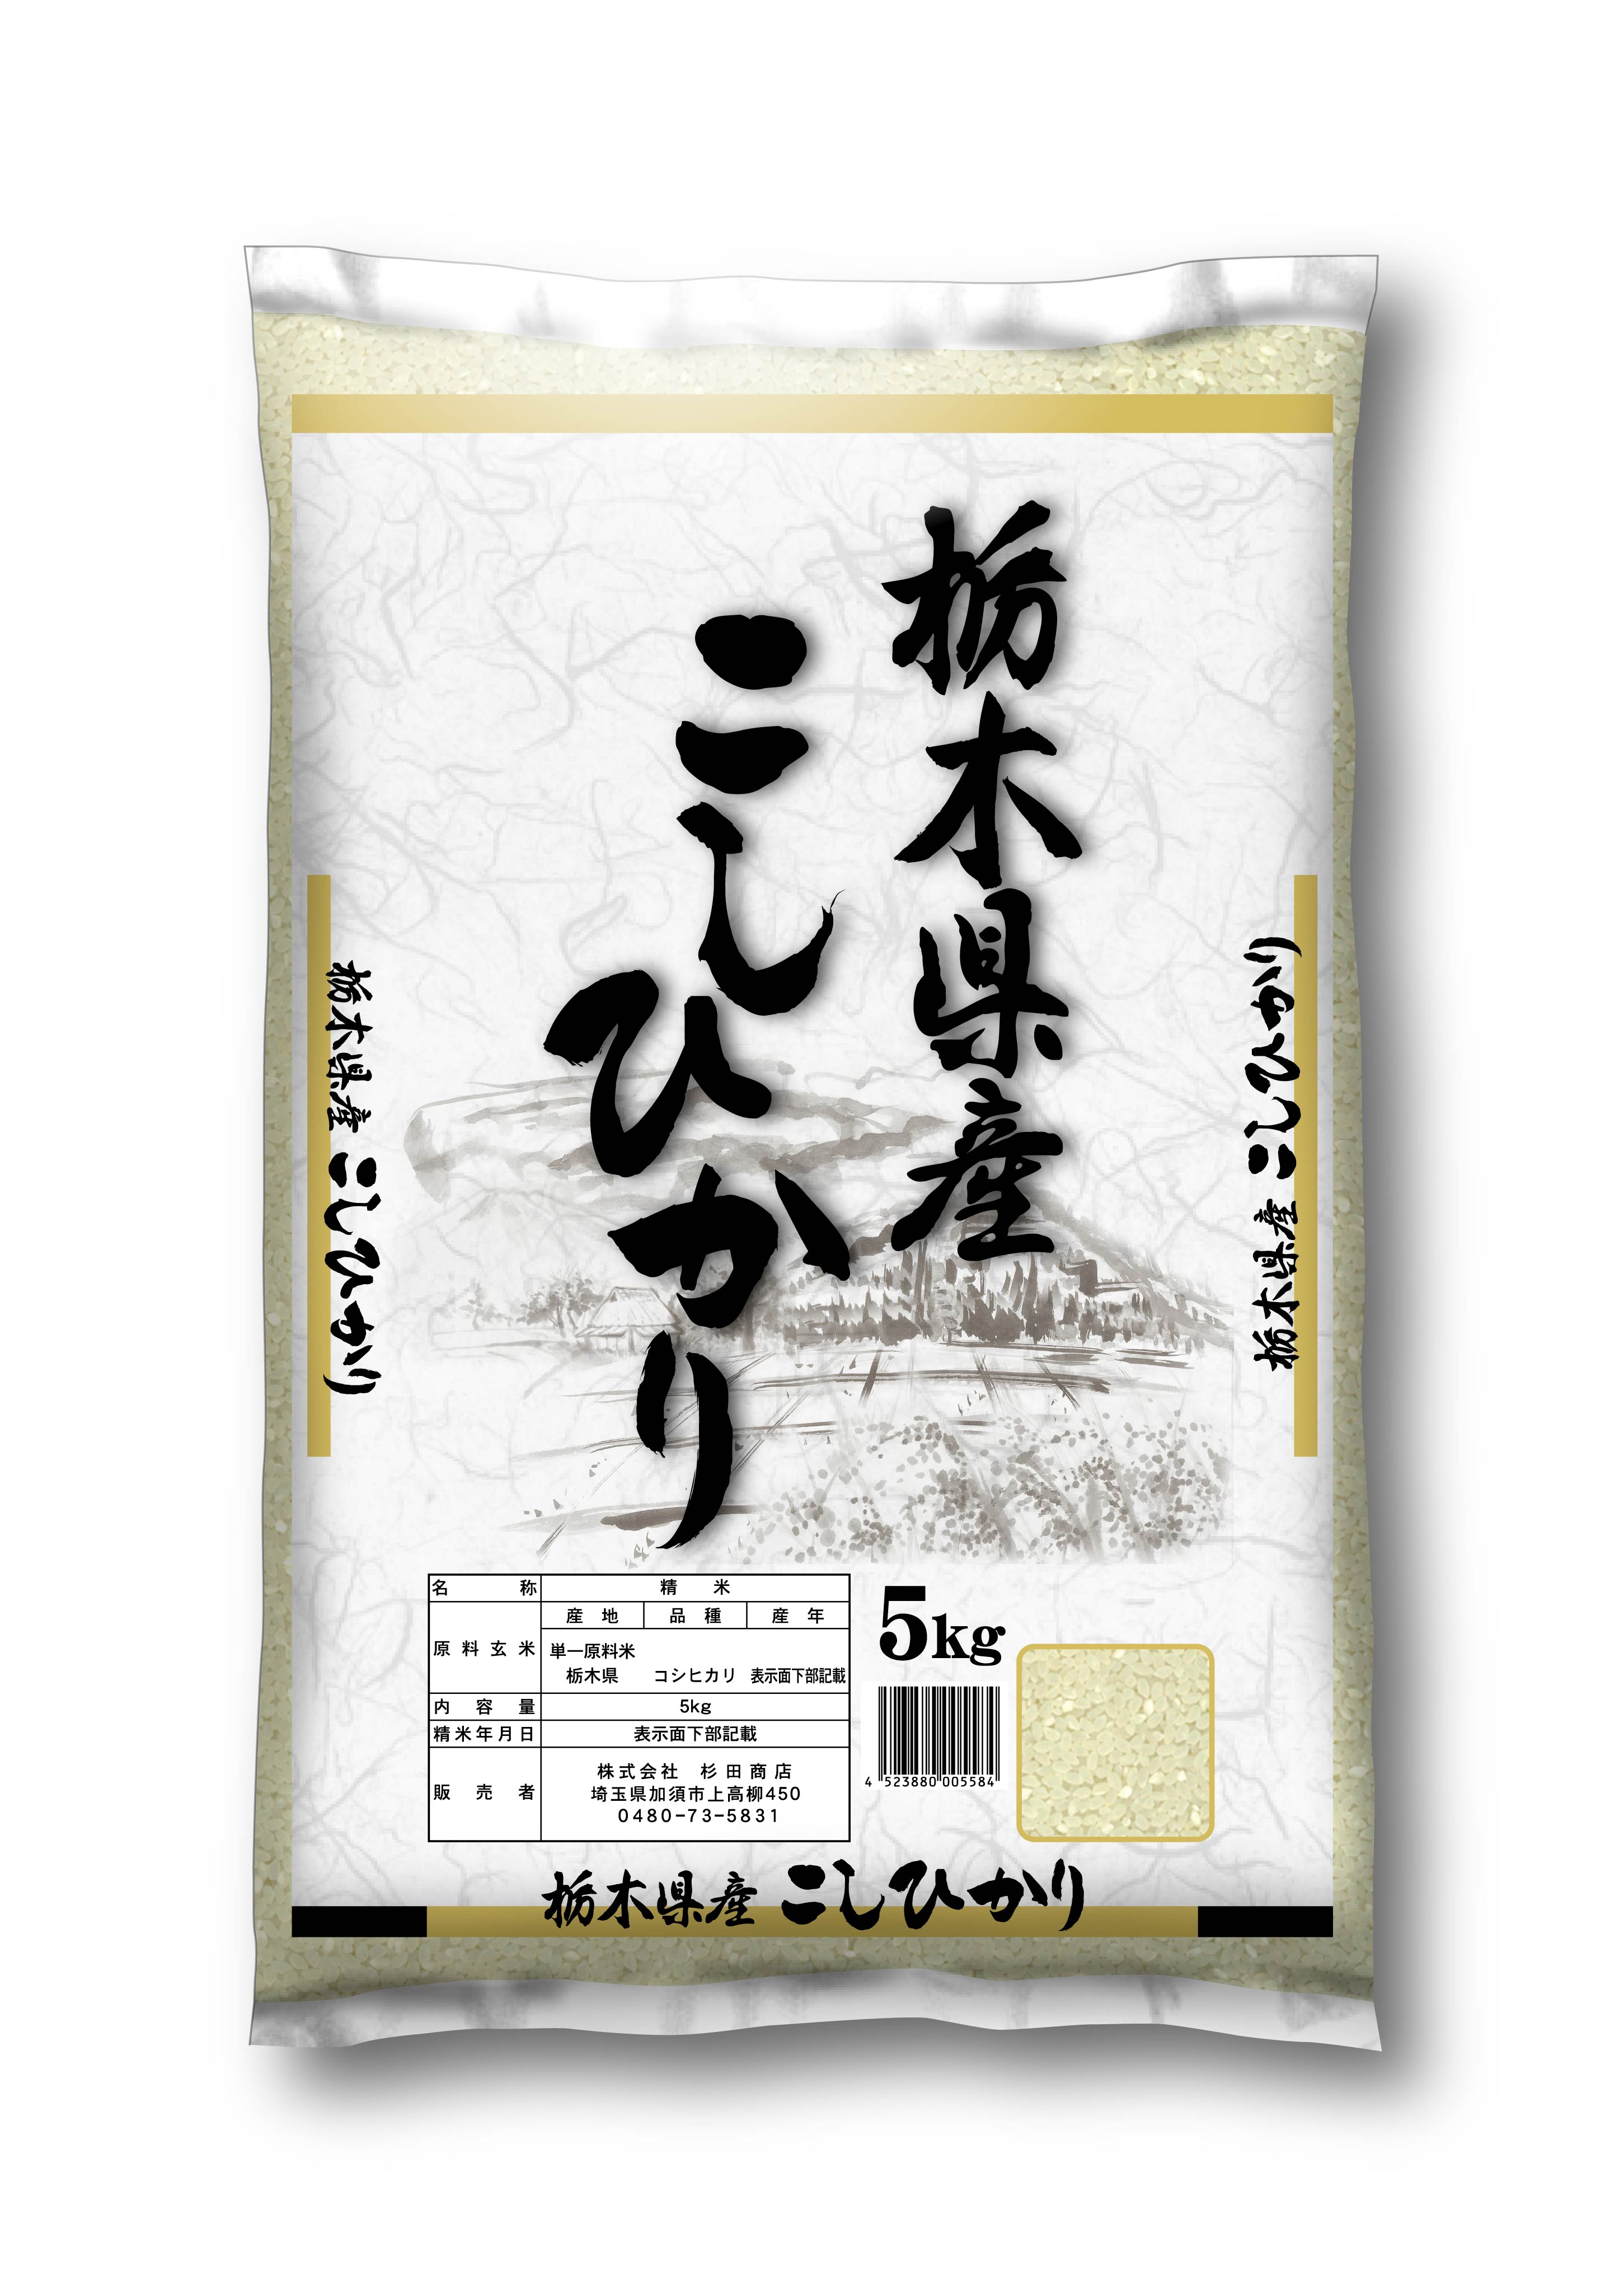 お米 令和2年度栃木県産コシヒカリ 玄米30キロ - 米